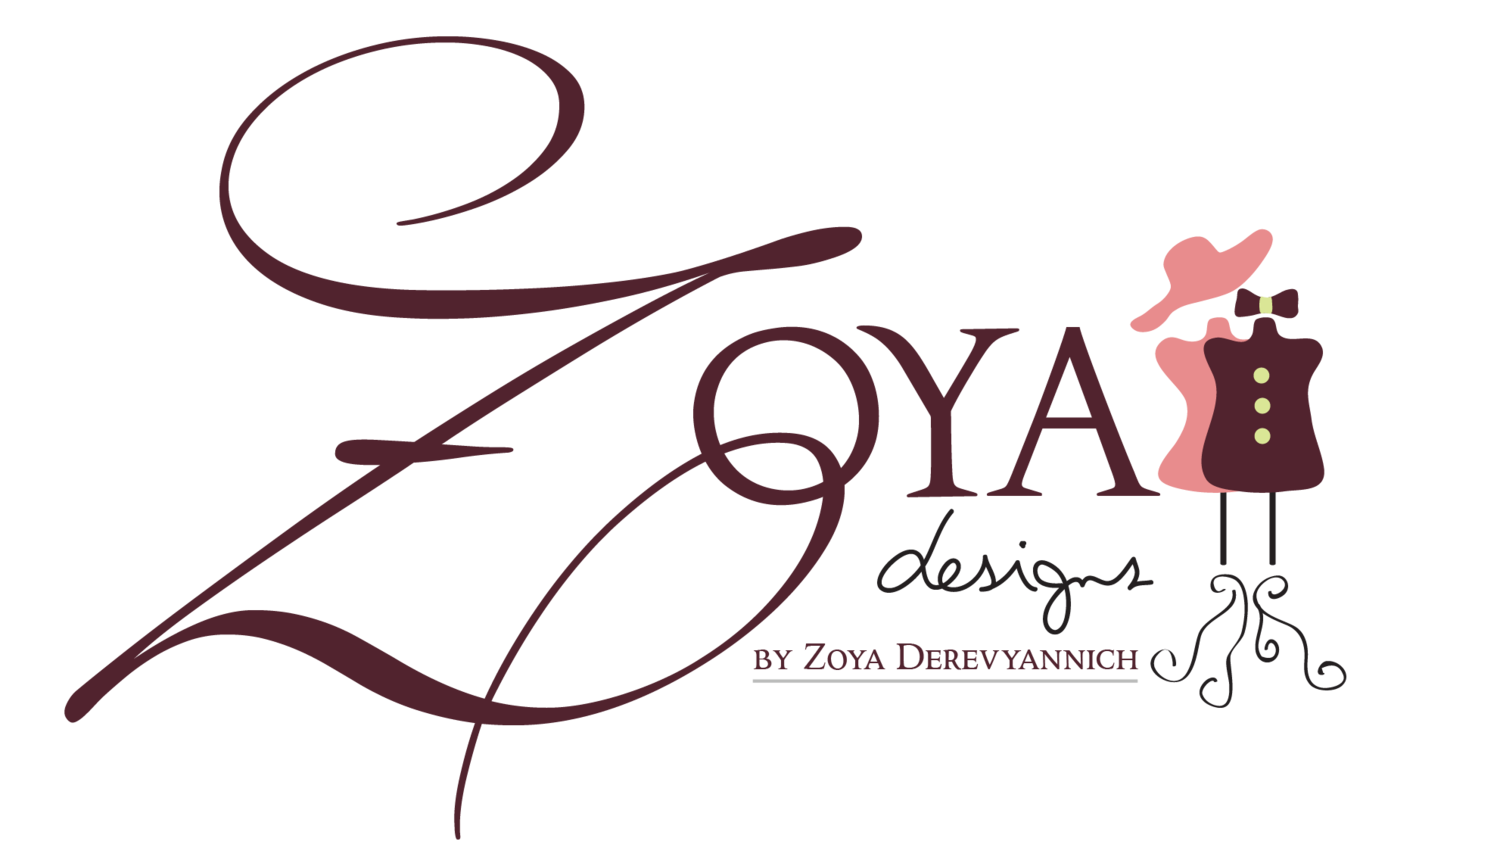 Zoya Designs INC 200 Great Rd 3B-4B, Bedford MA 01730  617-475-0470